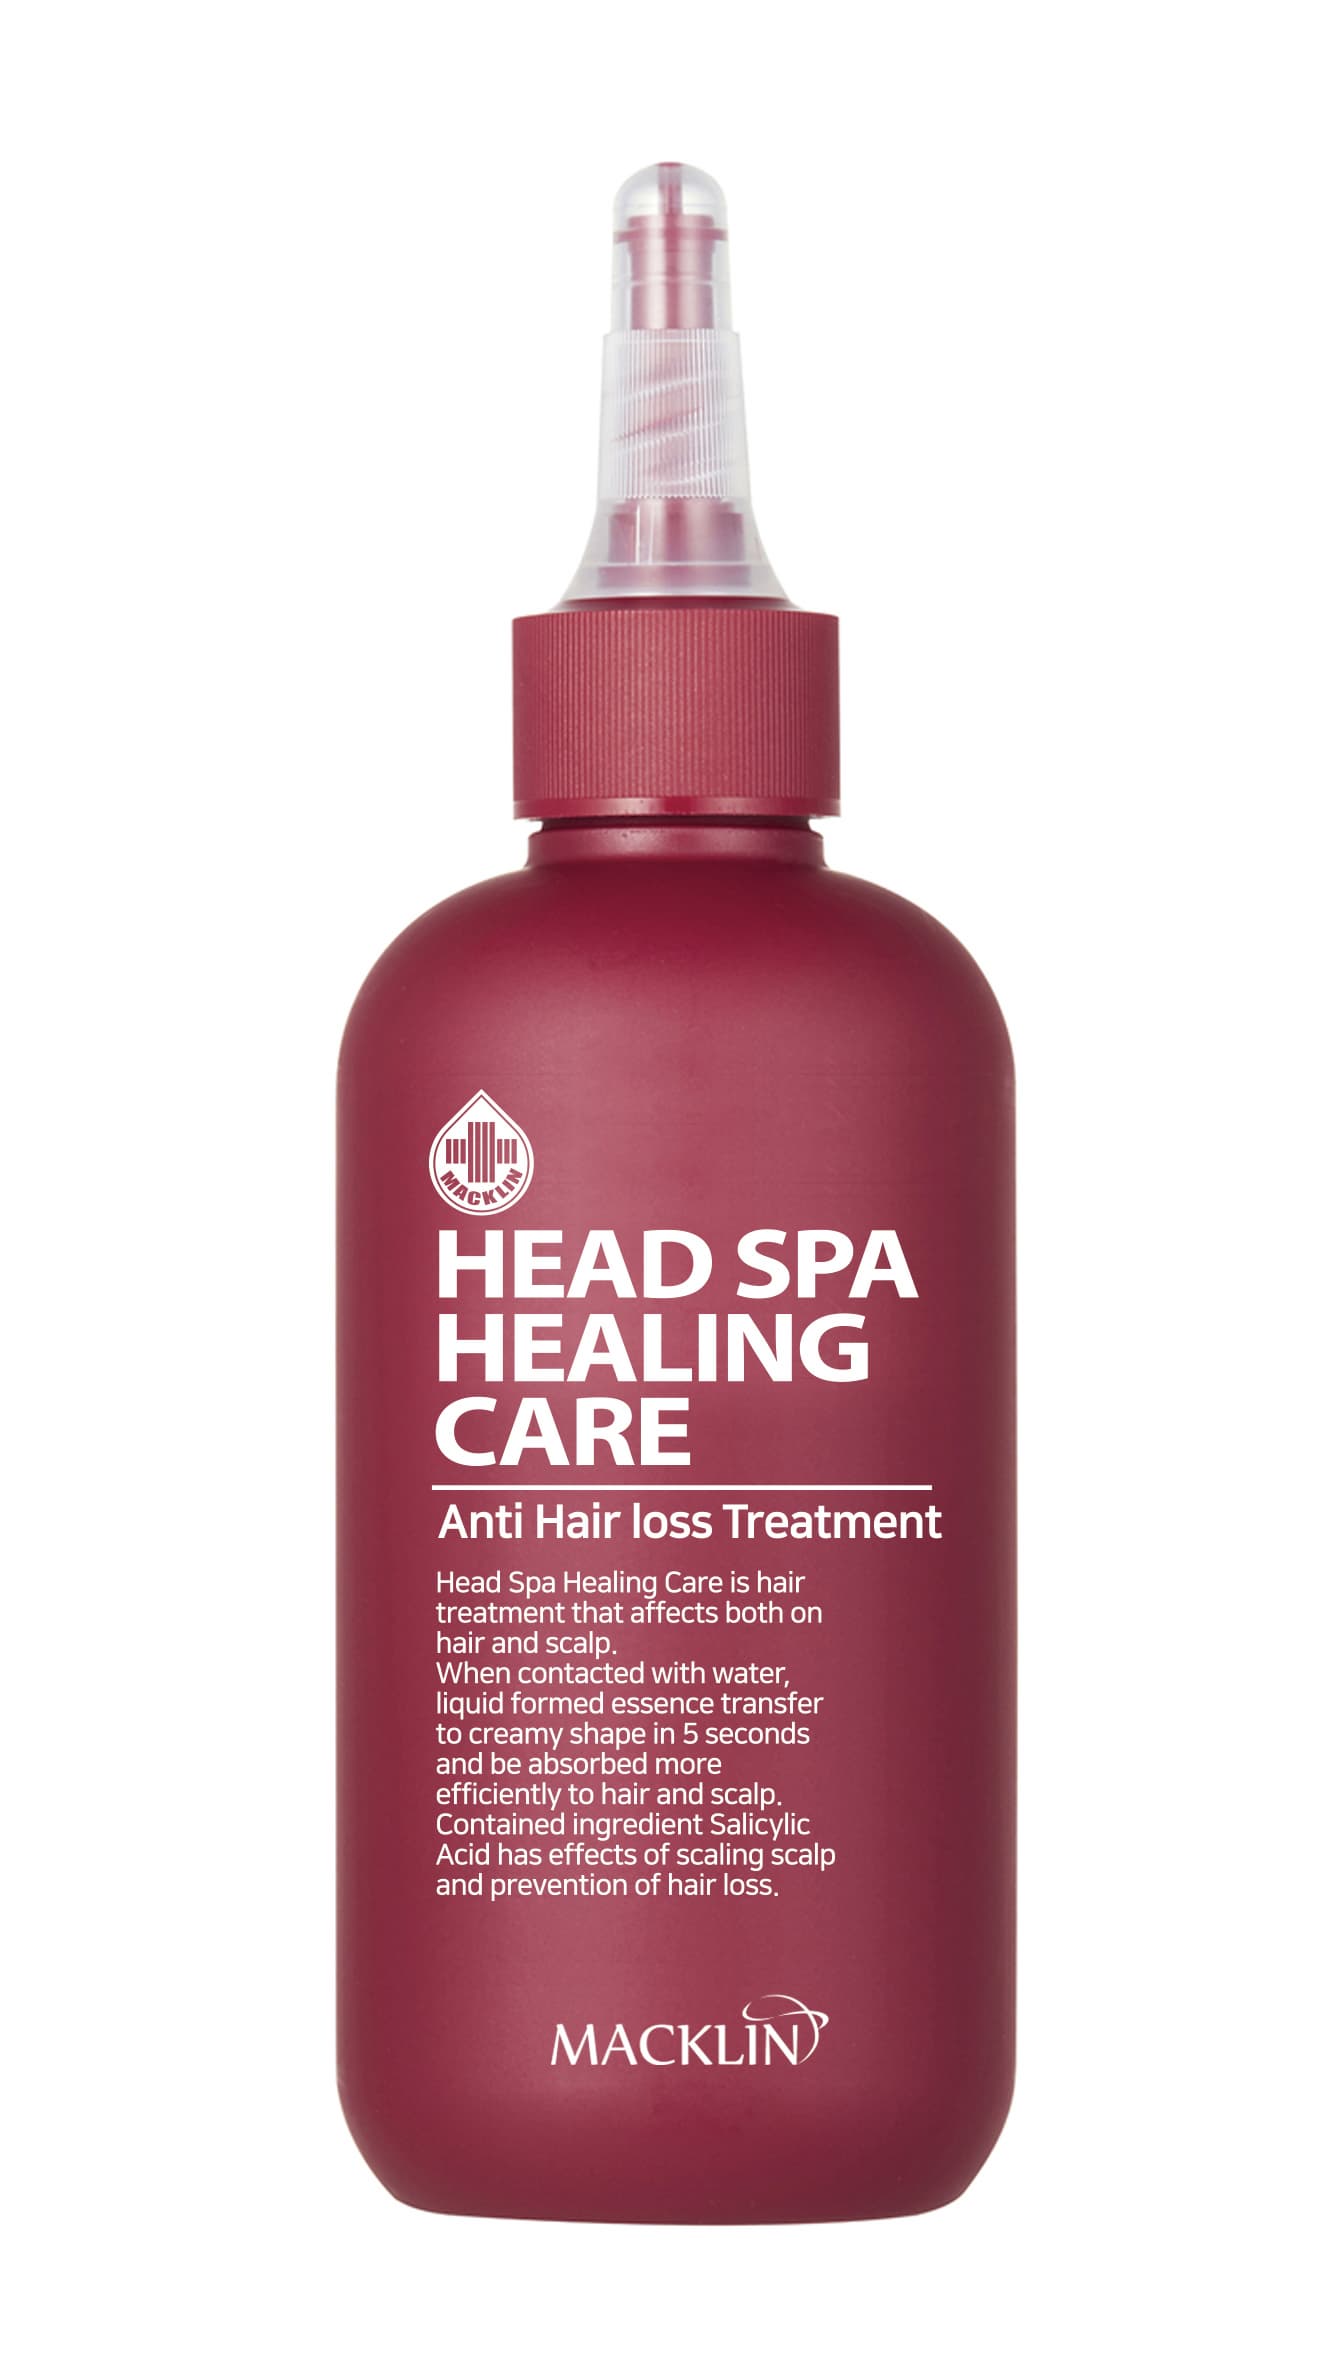 Head Spa Healing Care Treatment Anti Hair loss care